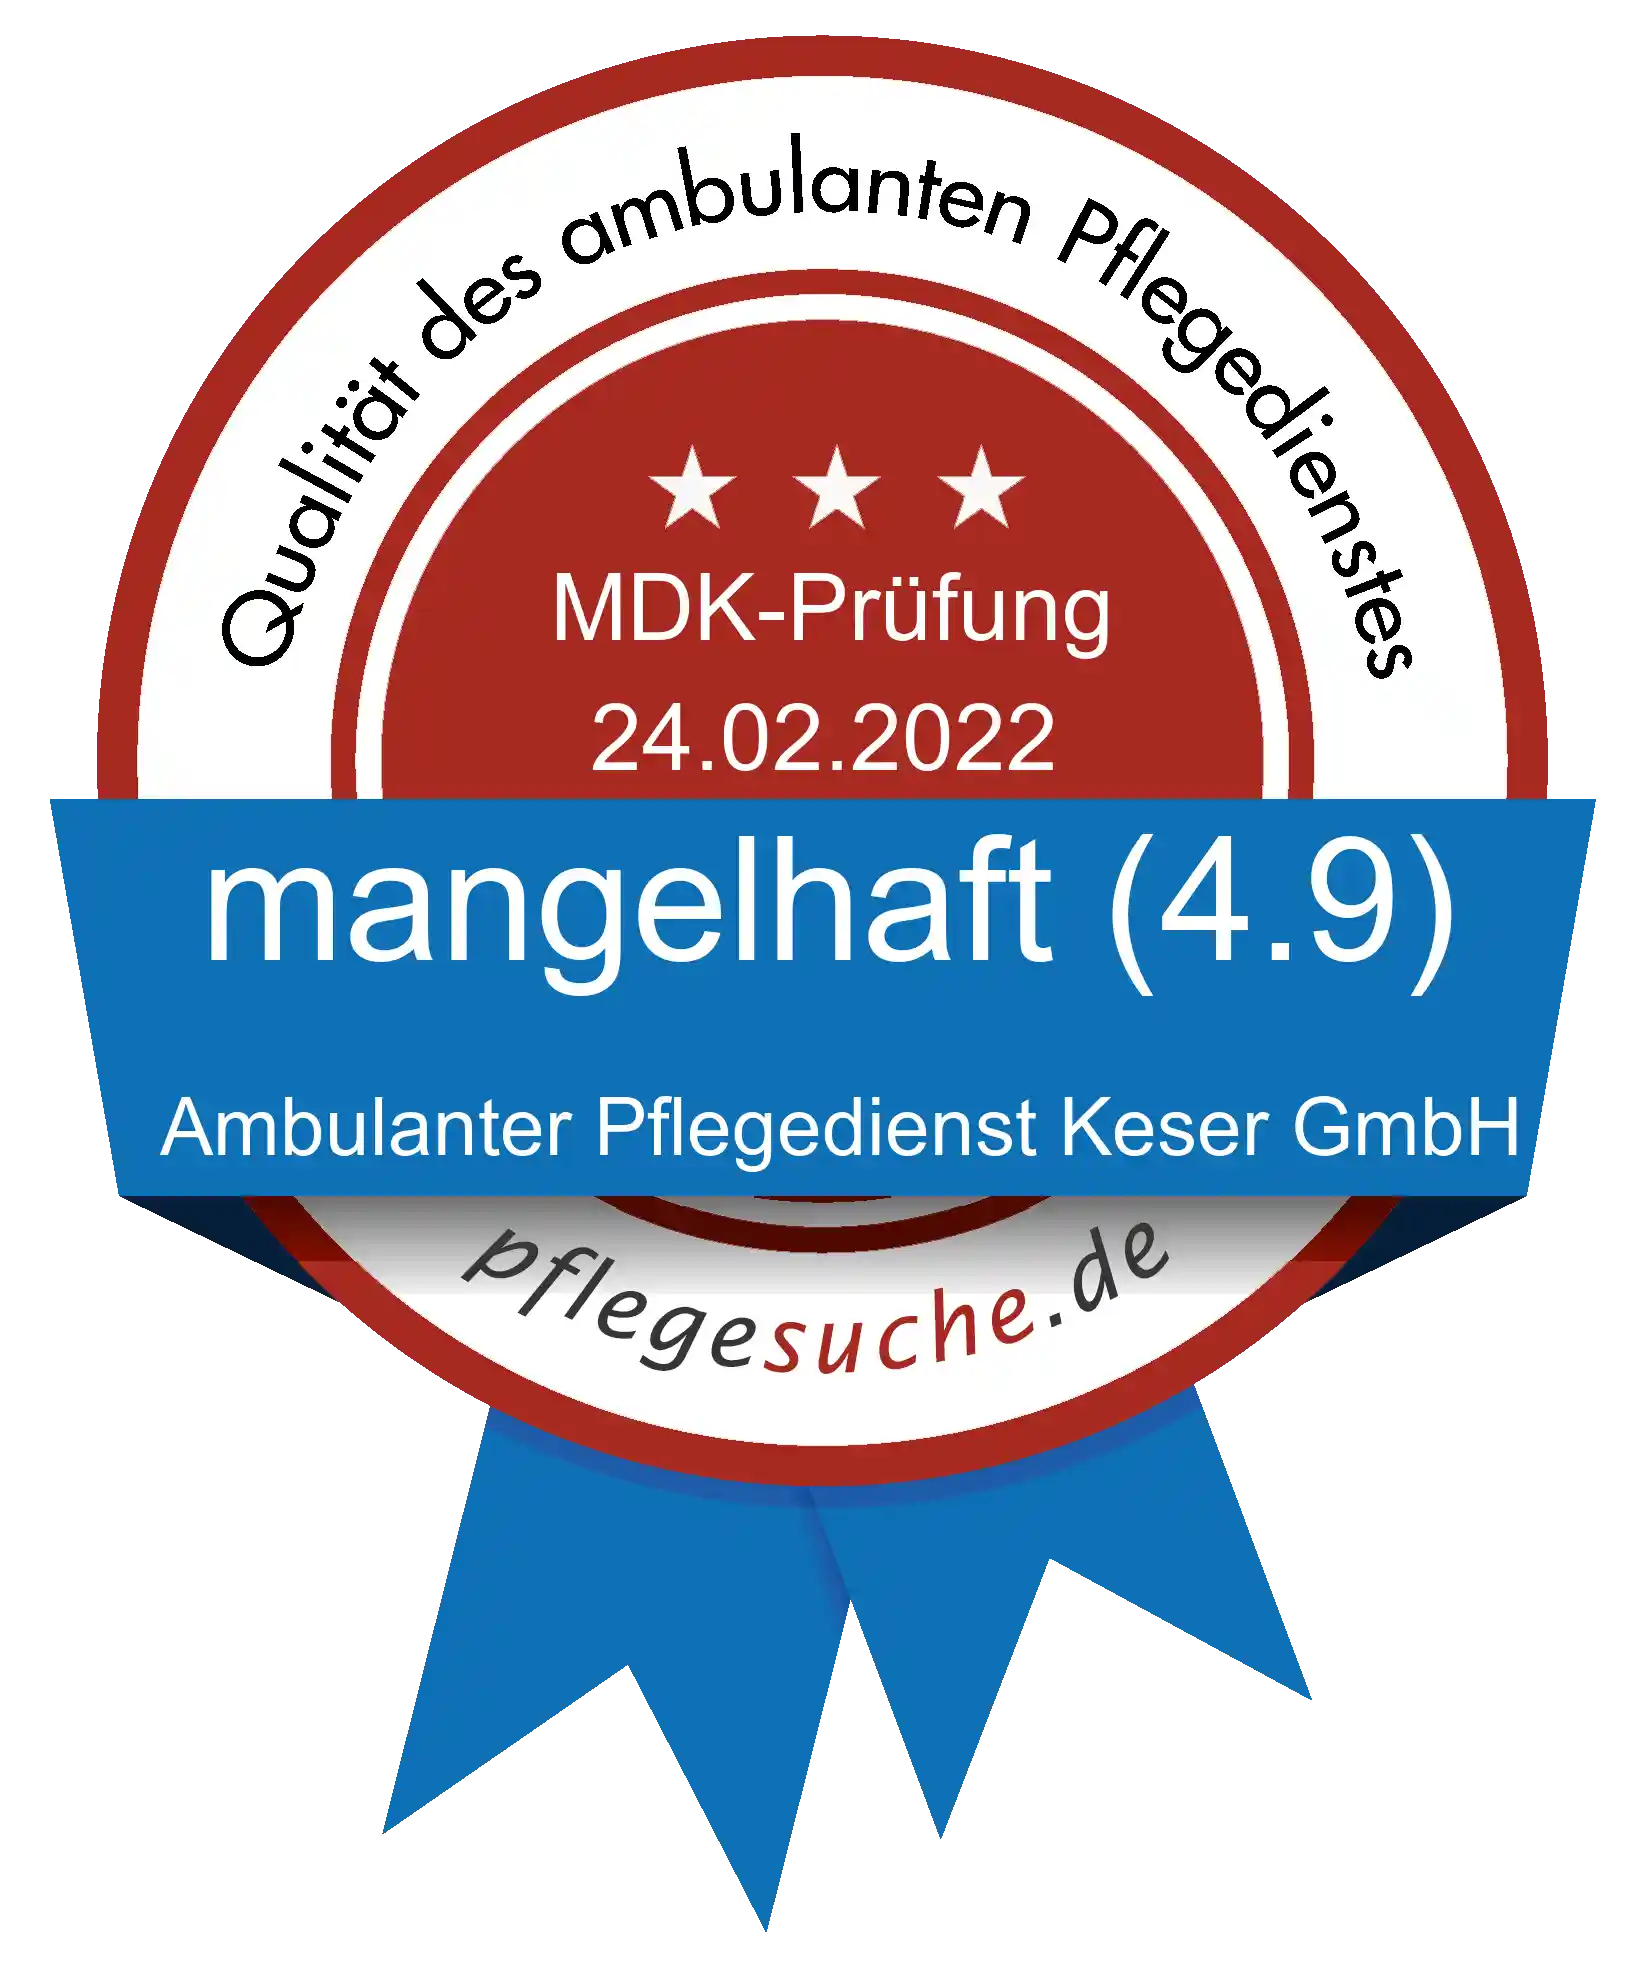 Siegel Benotung: Ambulanter Pflegedienst Keser GmbH